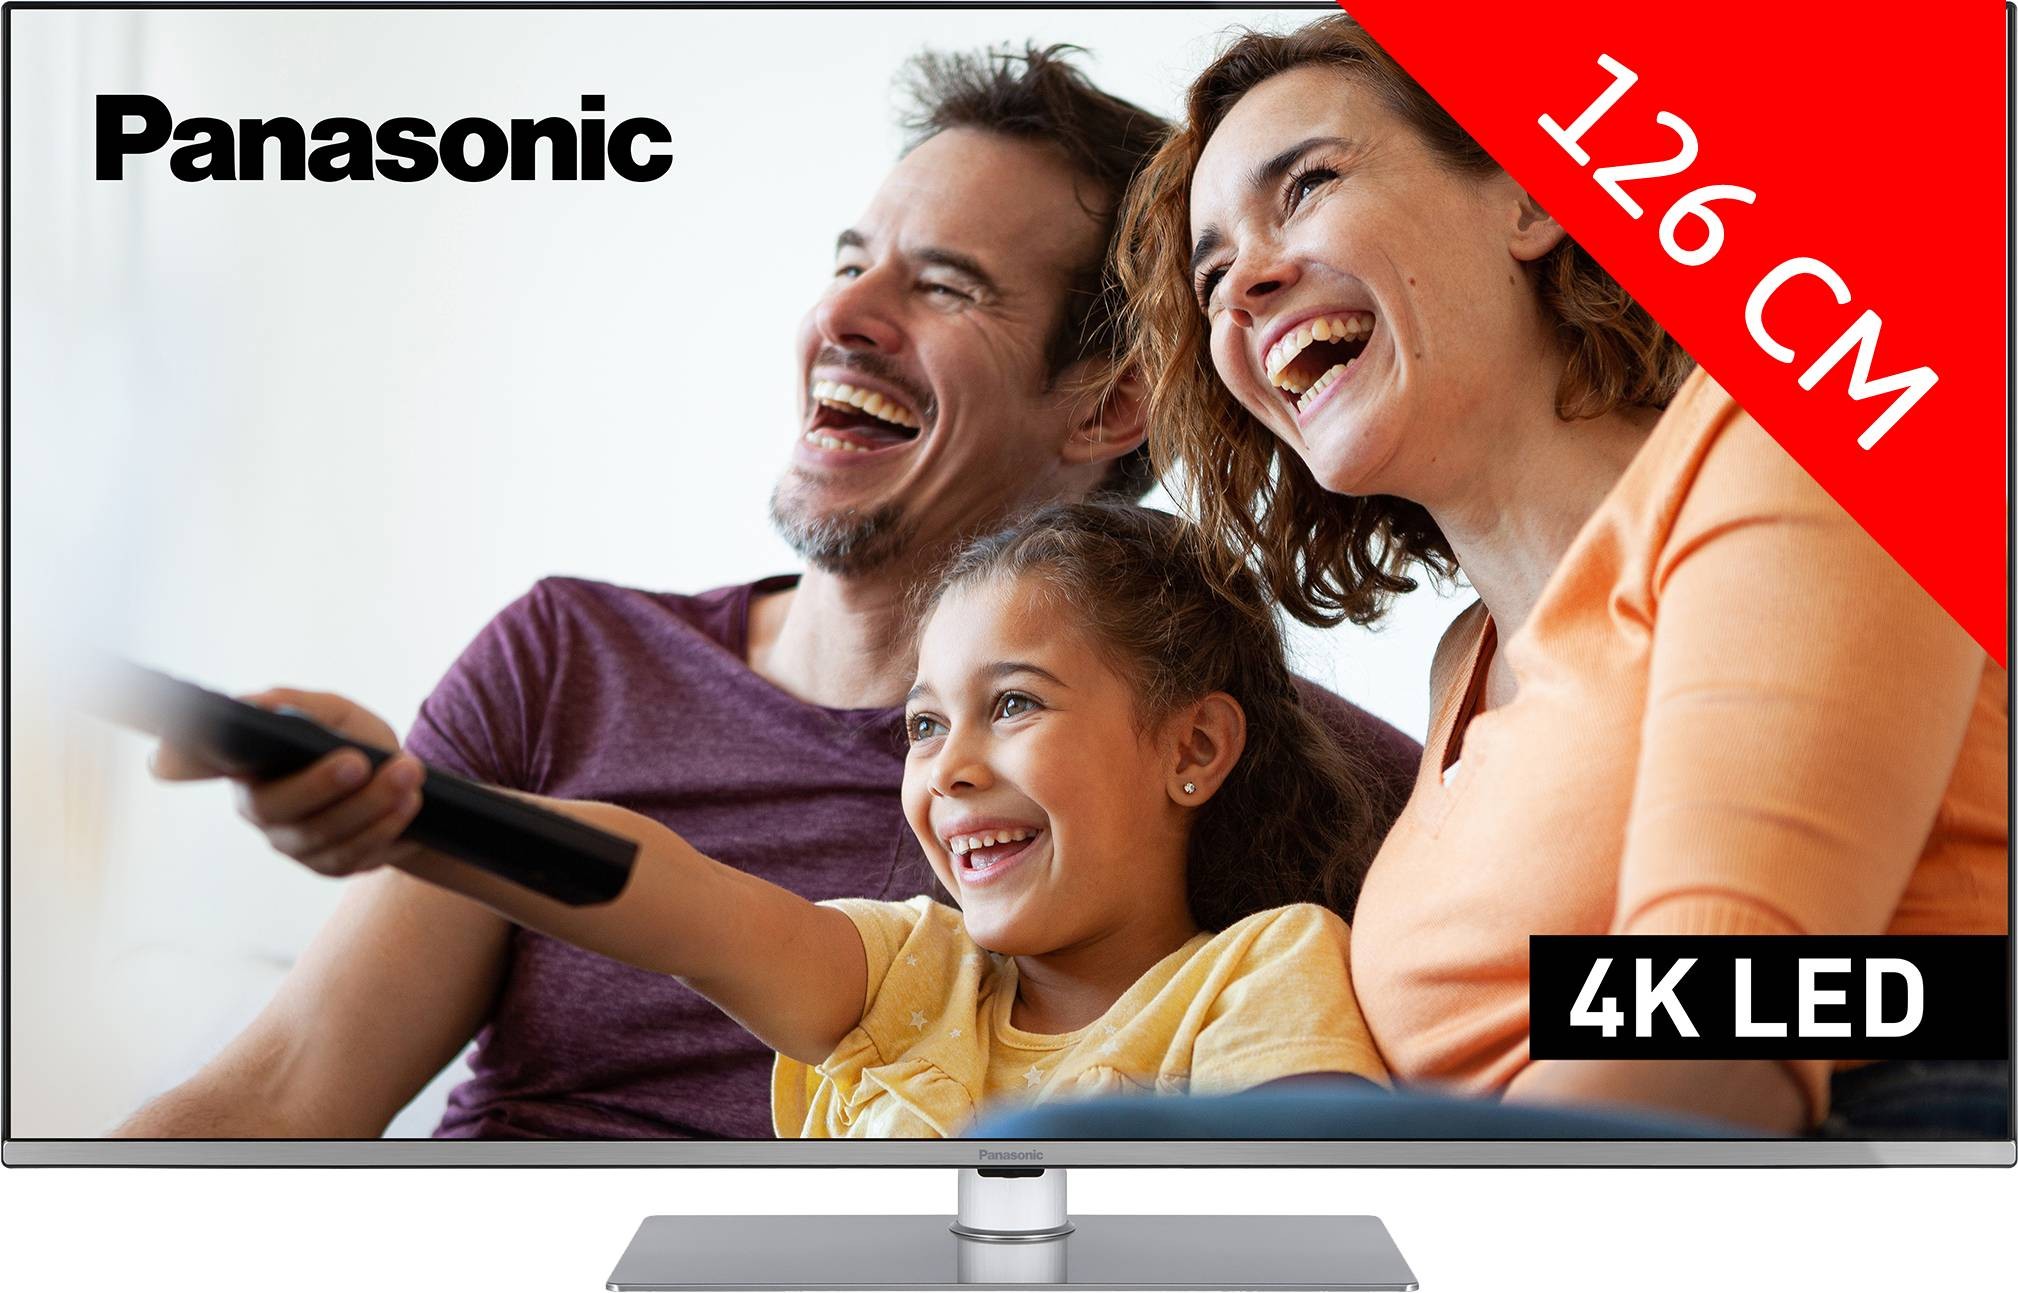 PANASONIC TV LED 4K 126 cm 50"  TX-50LX660E